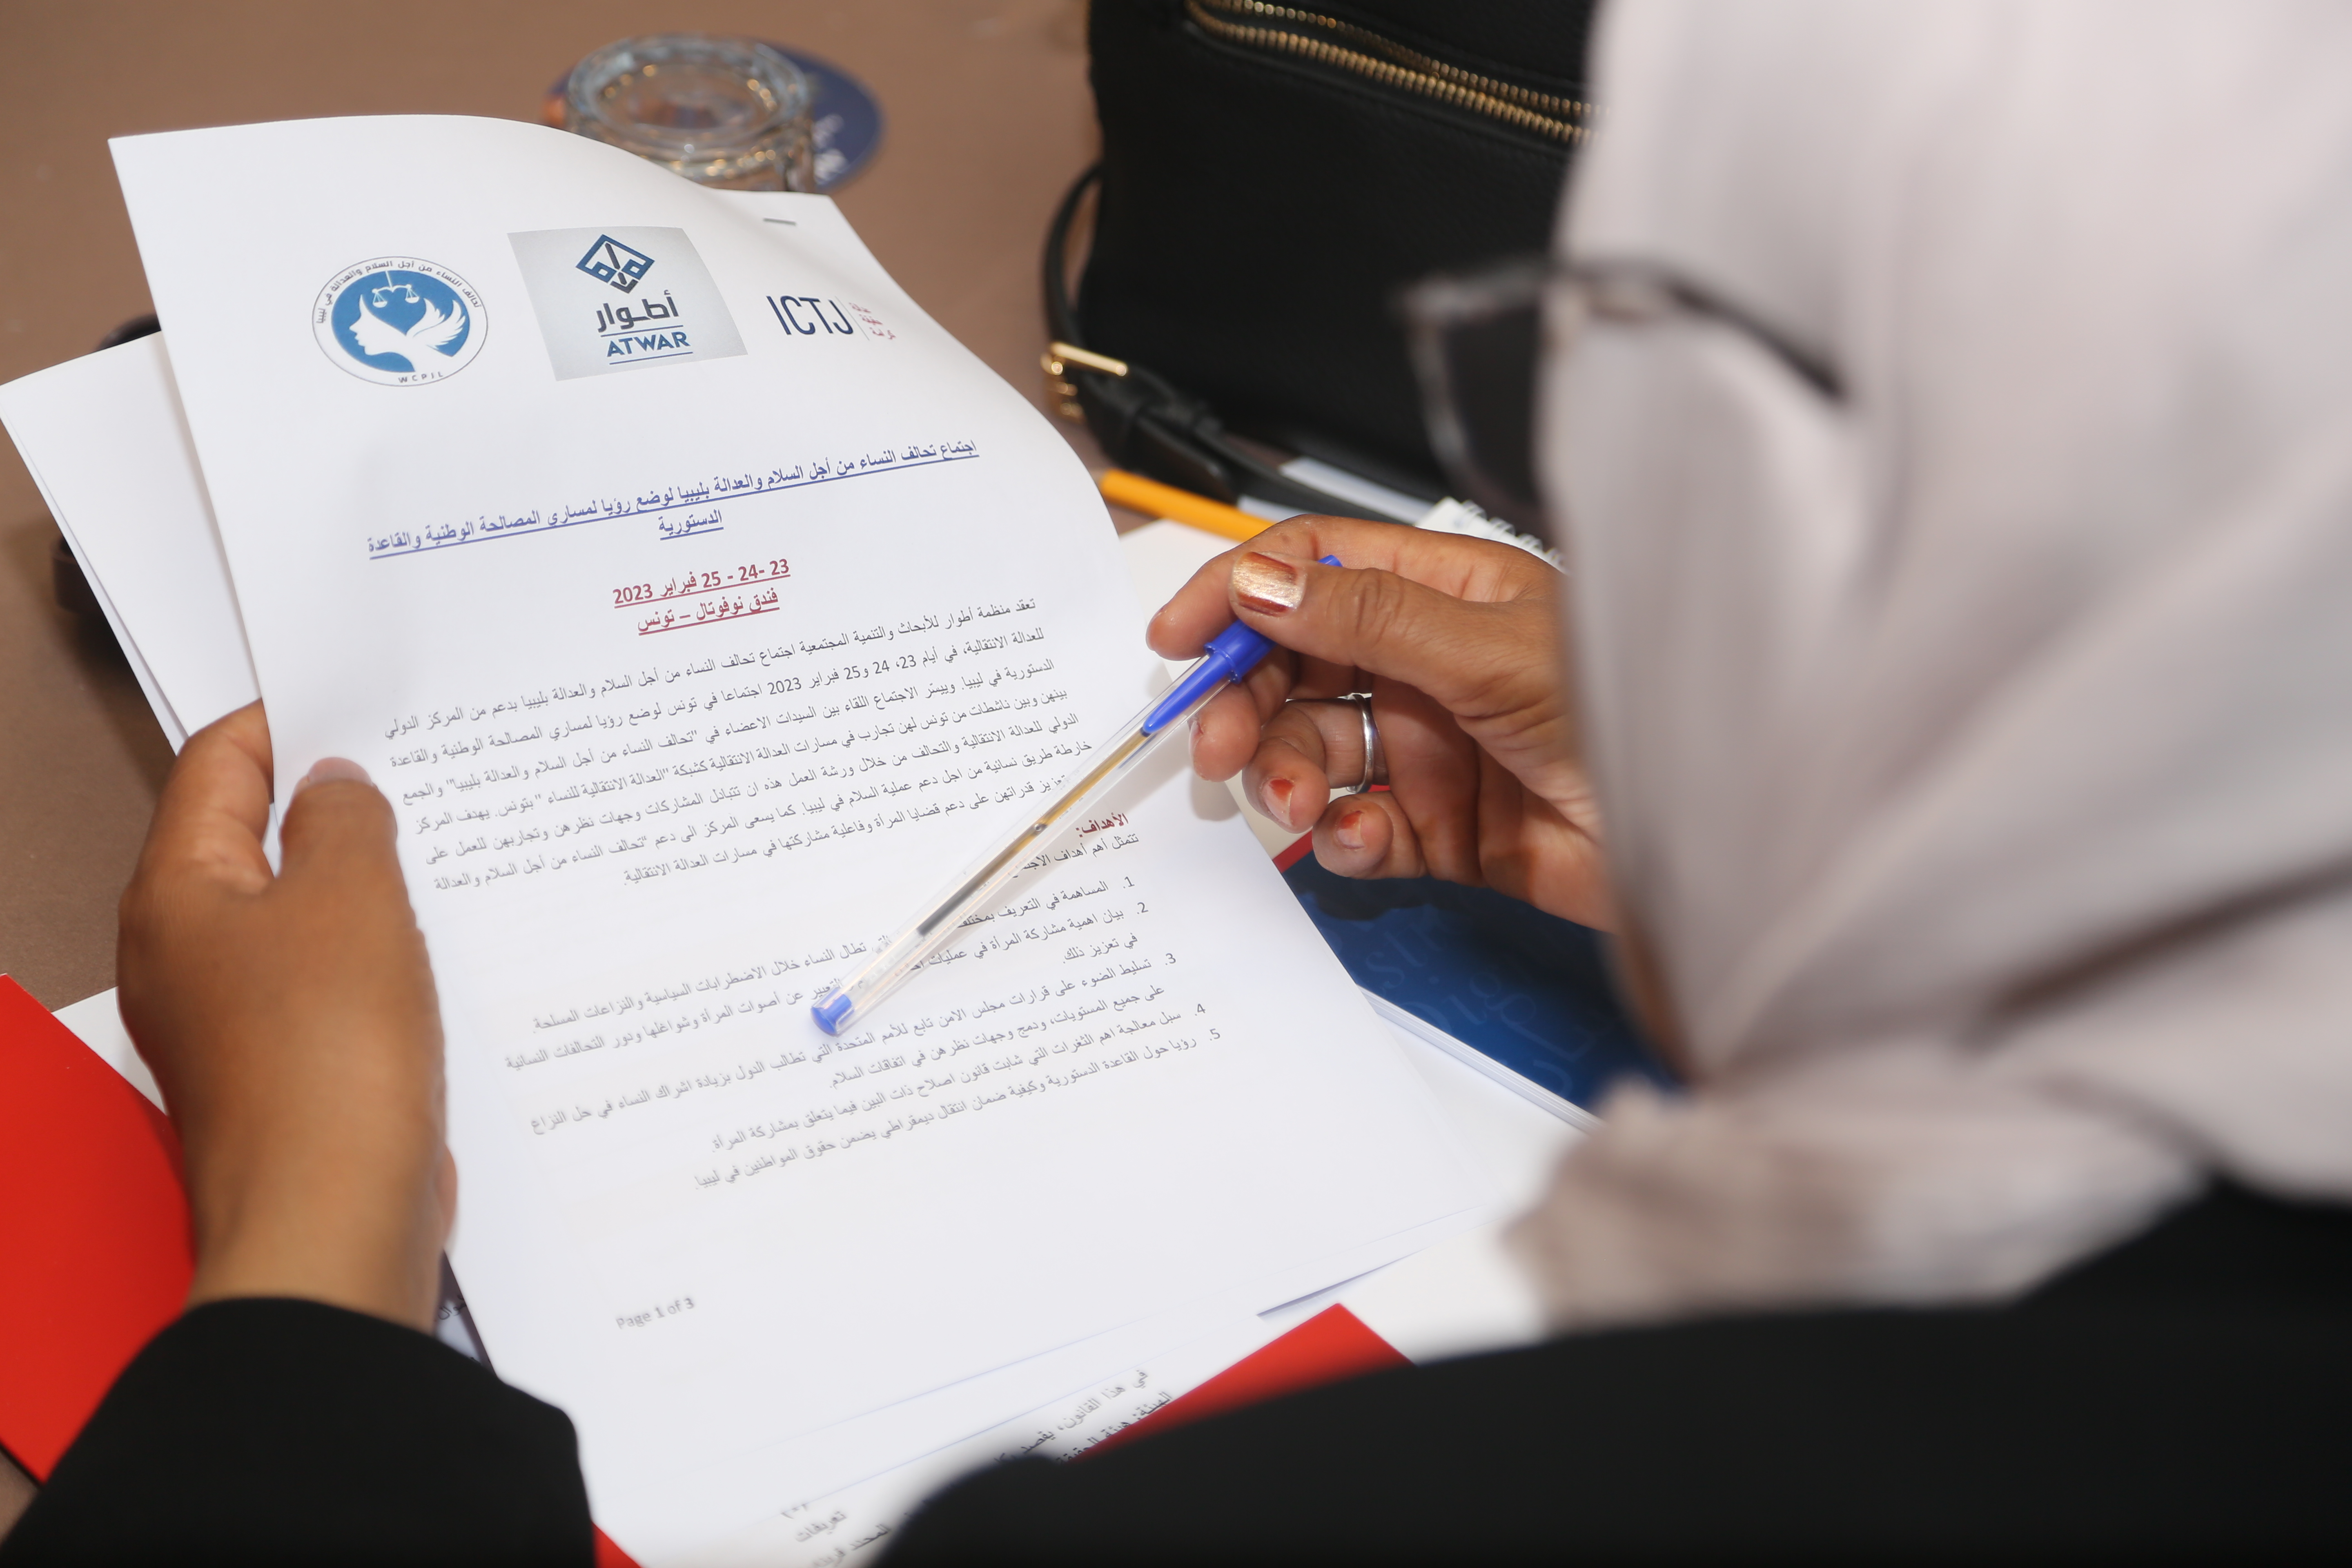 Un participante libio lee el programa y la nota conceptual del taller de febrero de 2023 en Túnez.